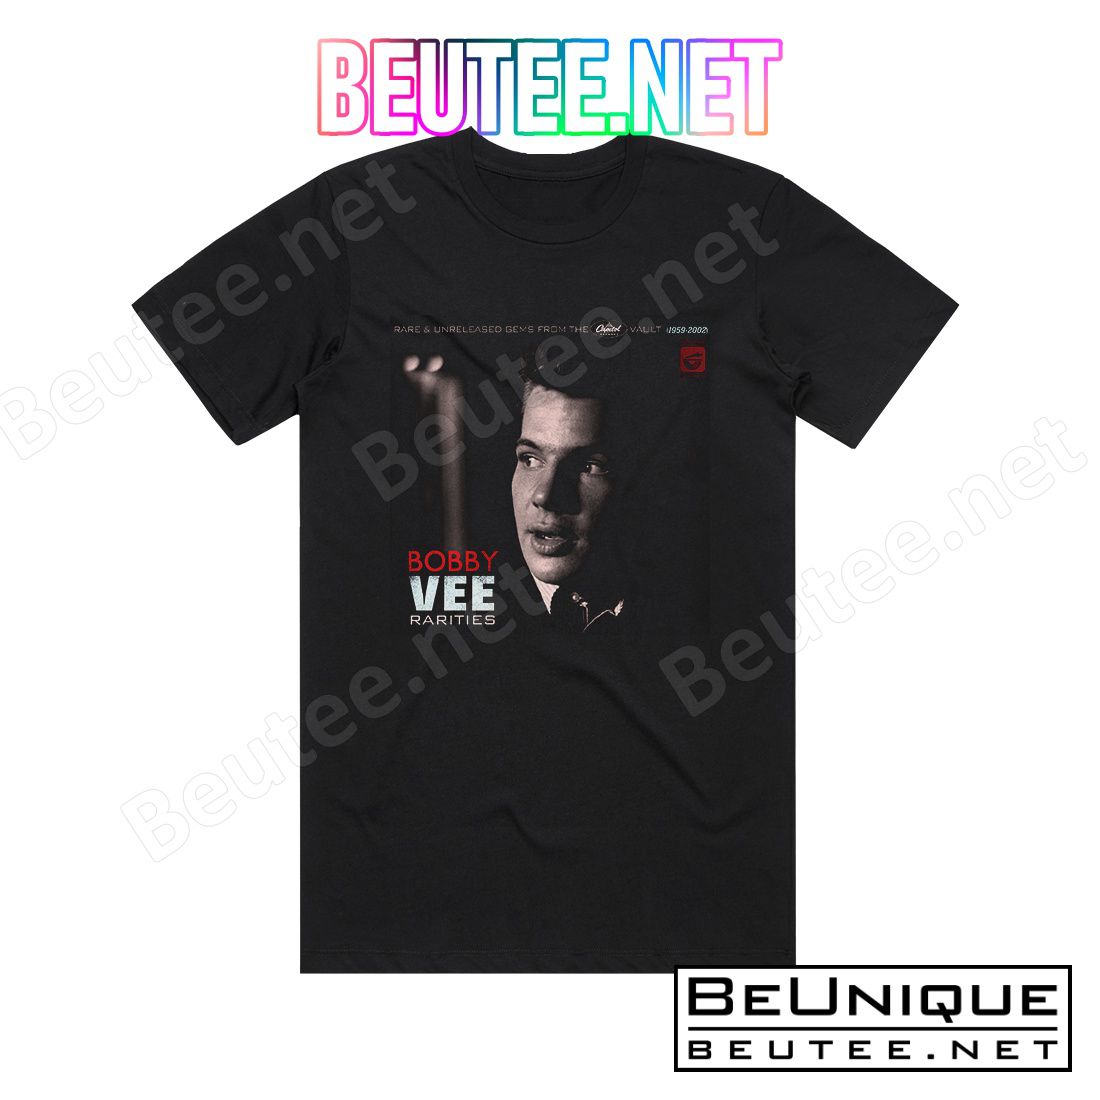 Bobby Vee Rarities Album Cover T-Shirt